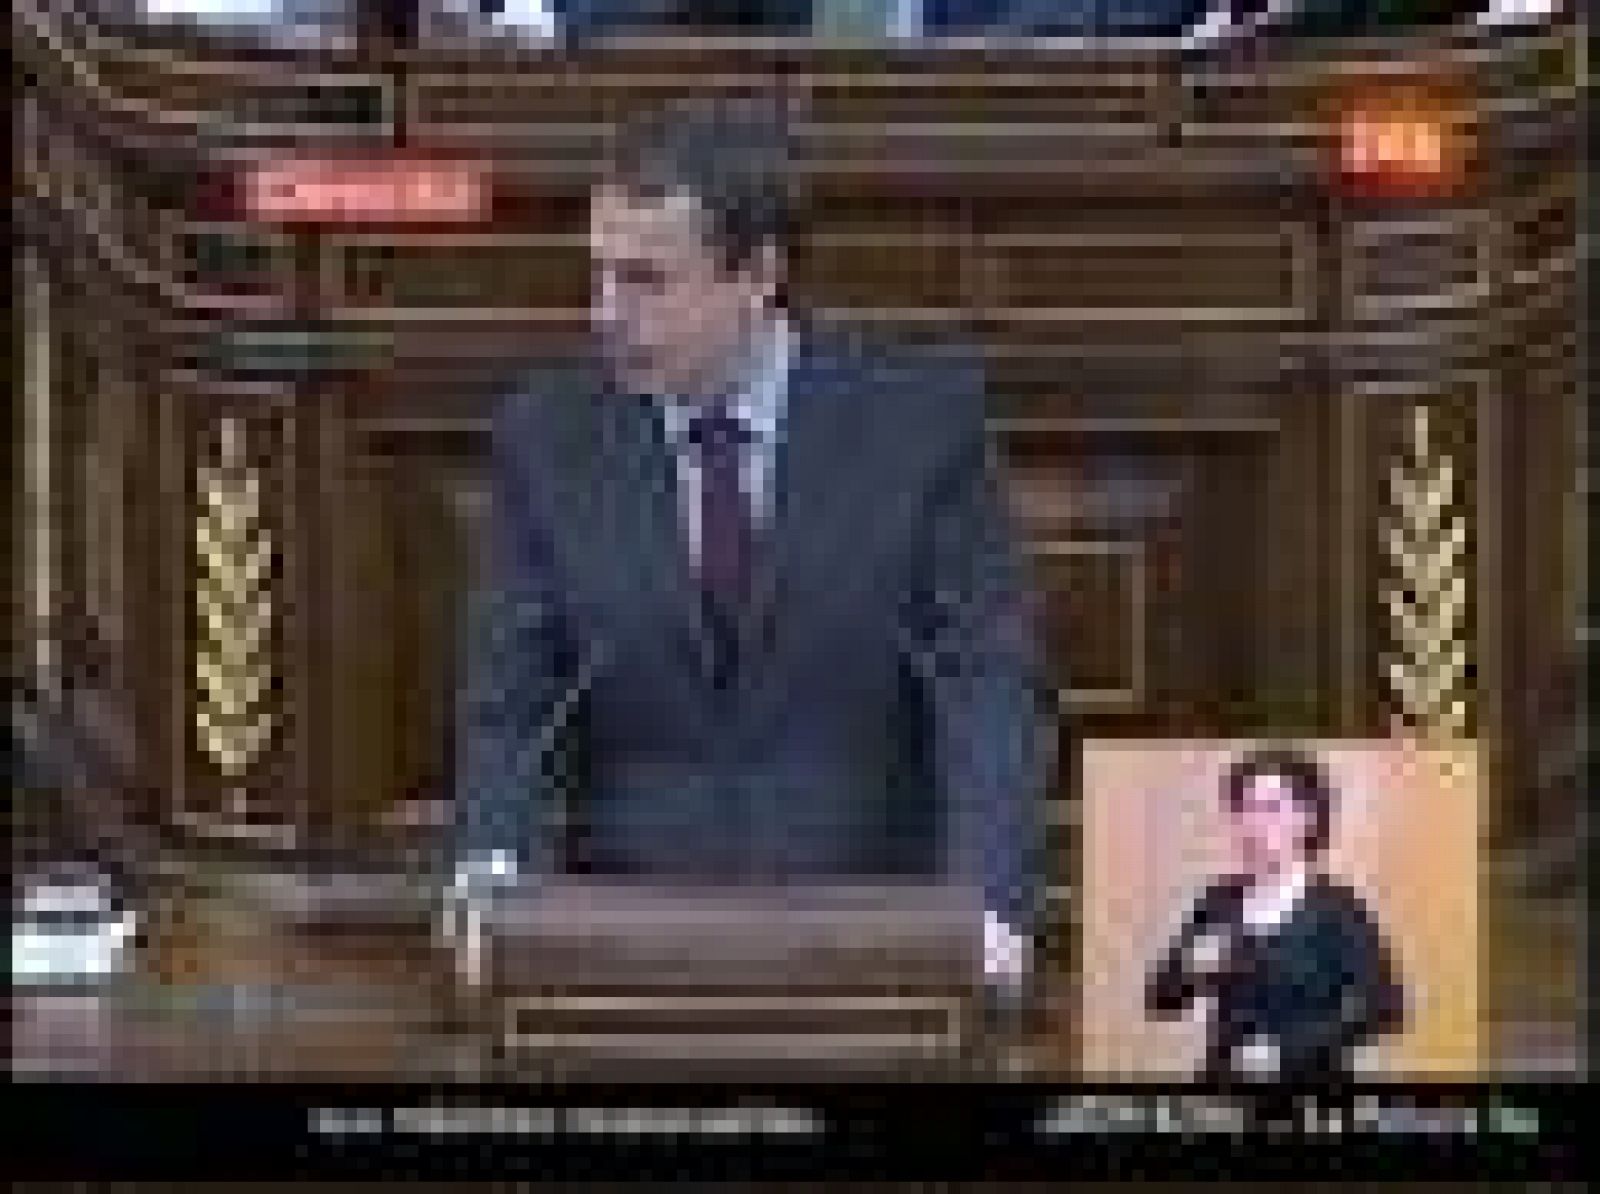 "Si tiene valentía y coraje político presente una moción de censura", ha dicho Zapatero a Rajoy.